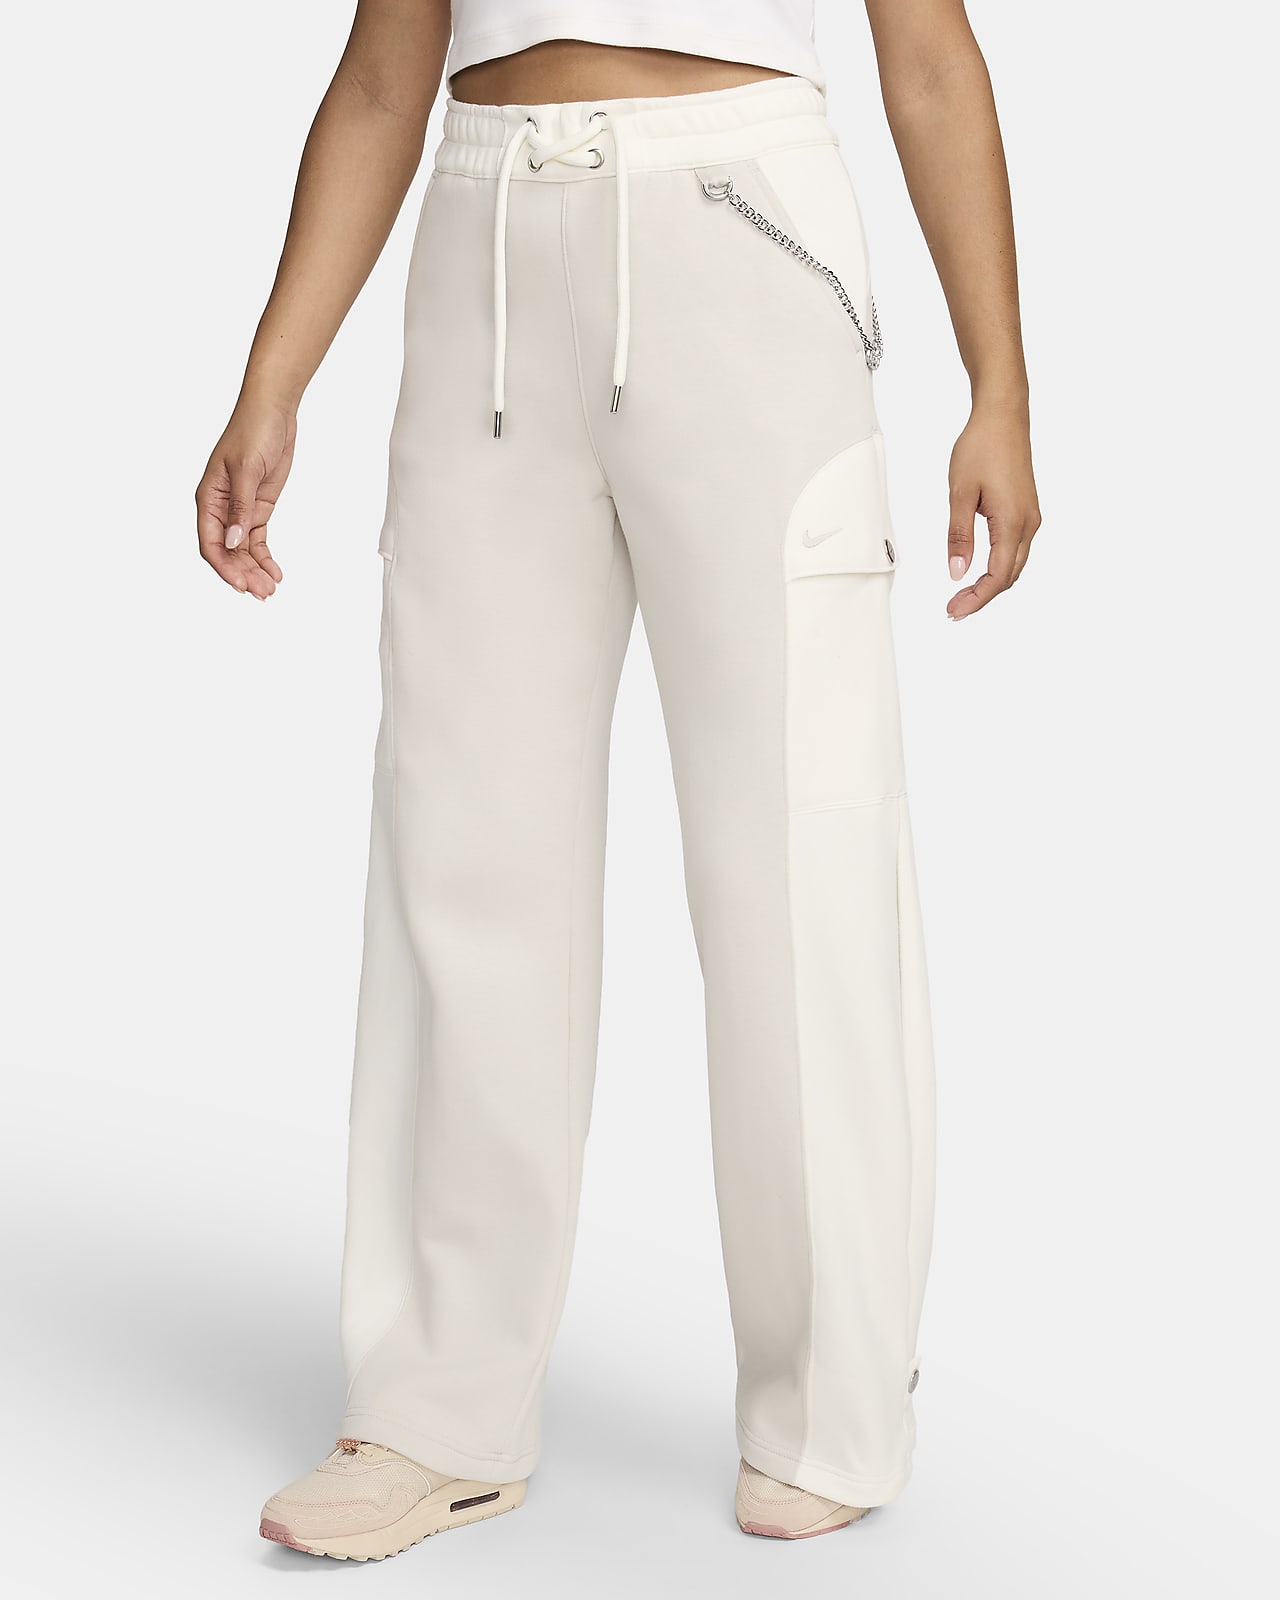 Serena Williams Design Crew Women's Fleece Pants